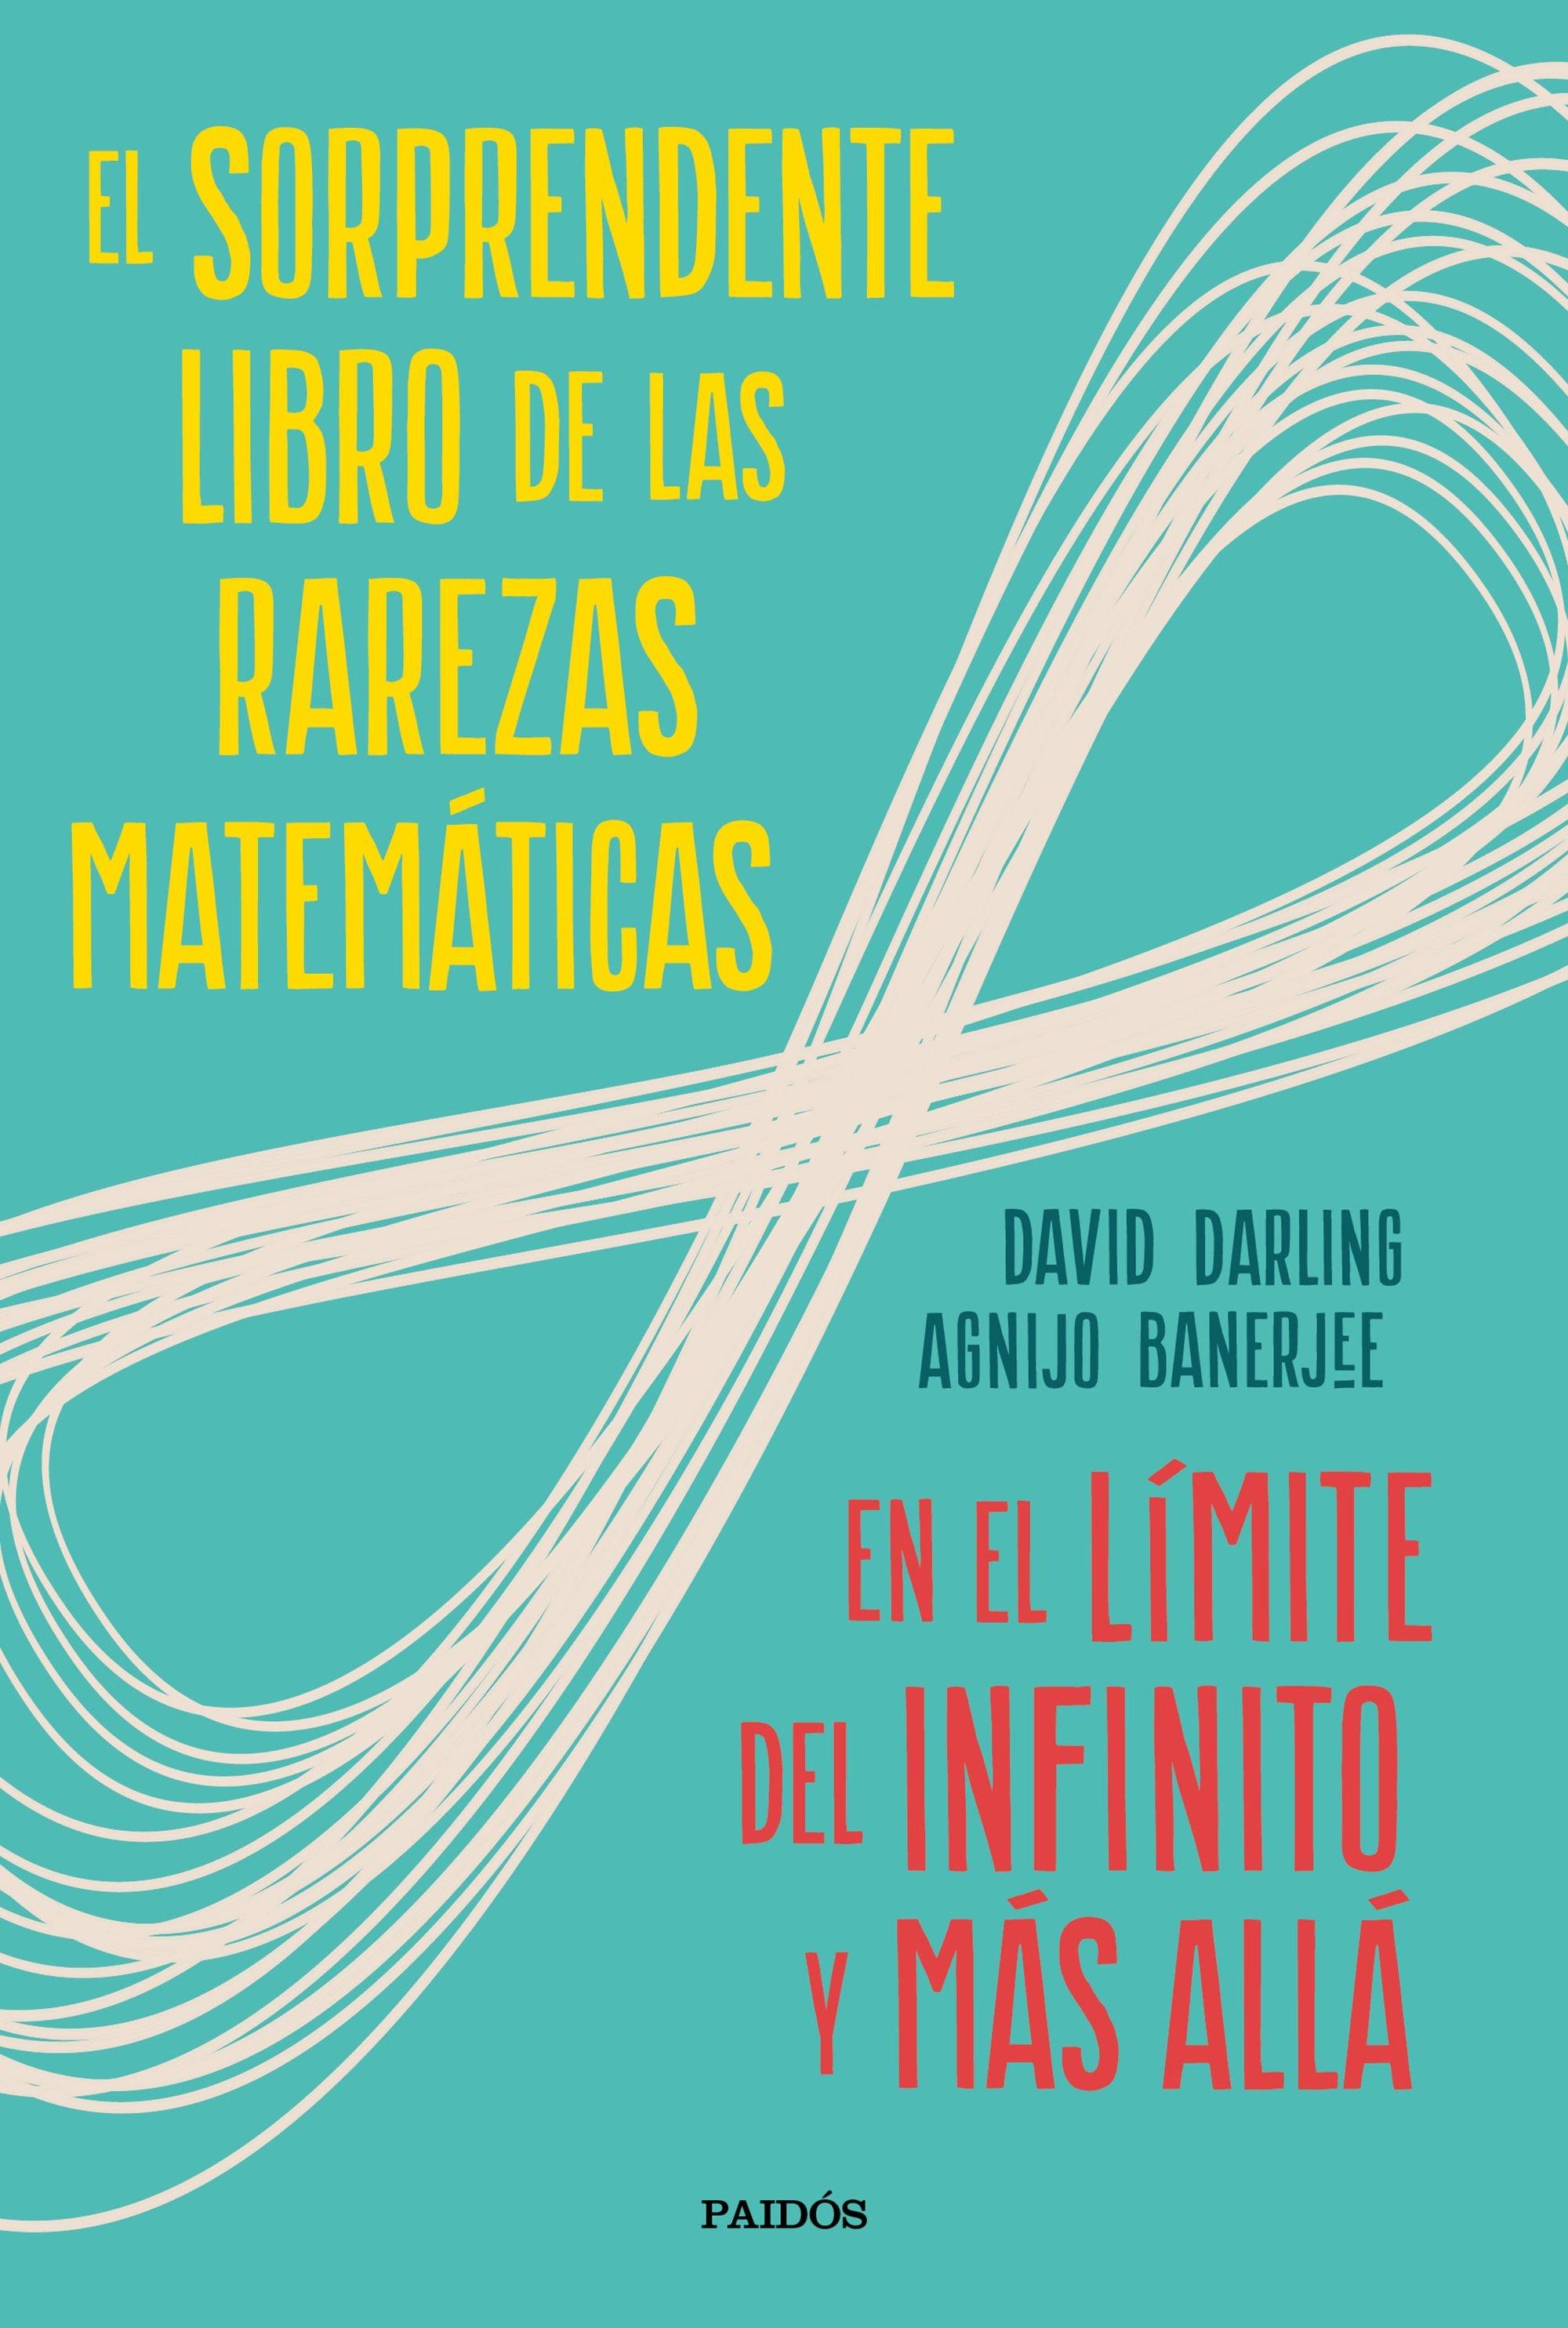 El Sorprendente Libro de las Rarezas Matemáticas "En el Límite del Infinito y Más Allá". 